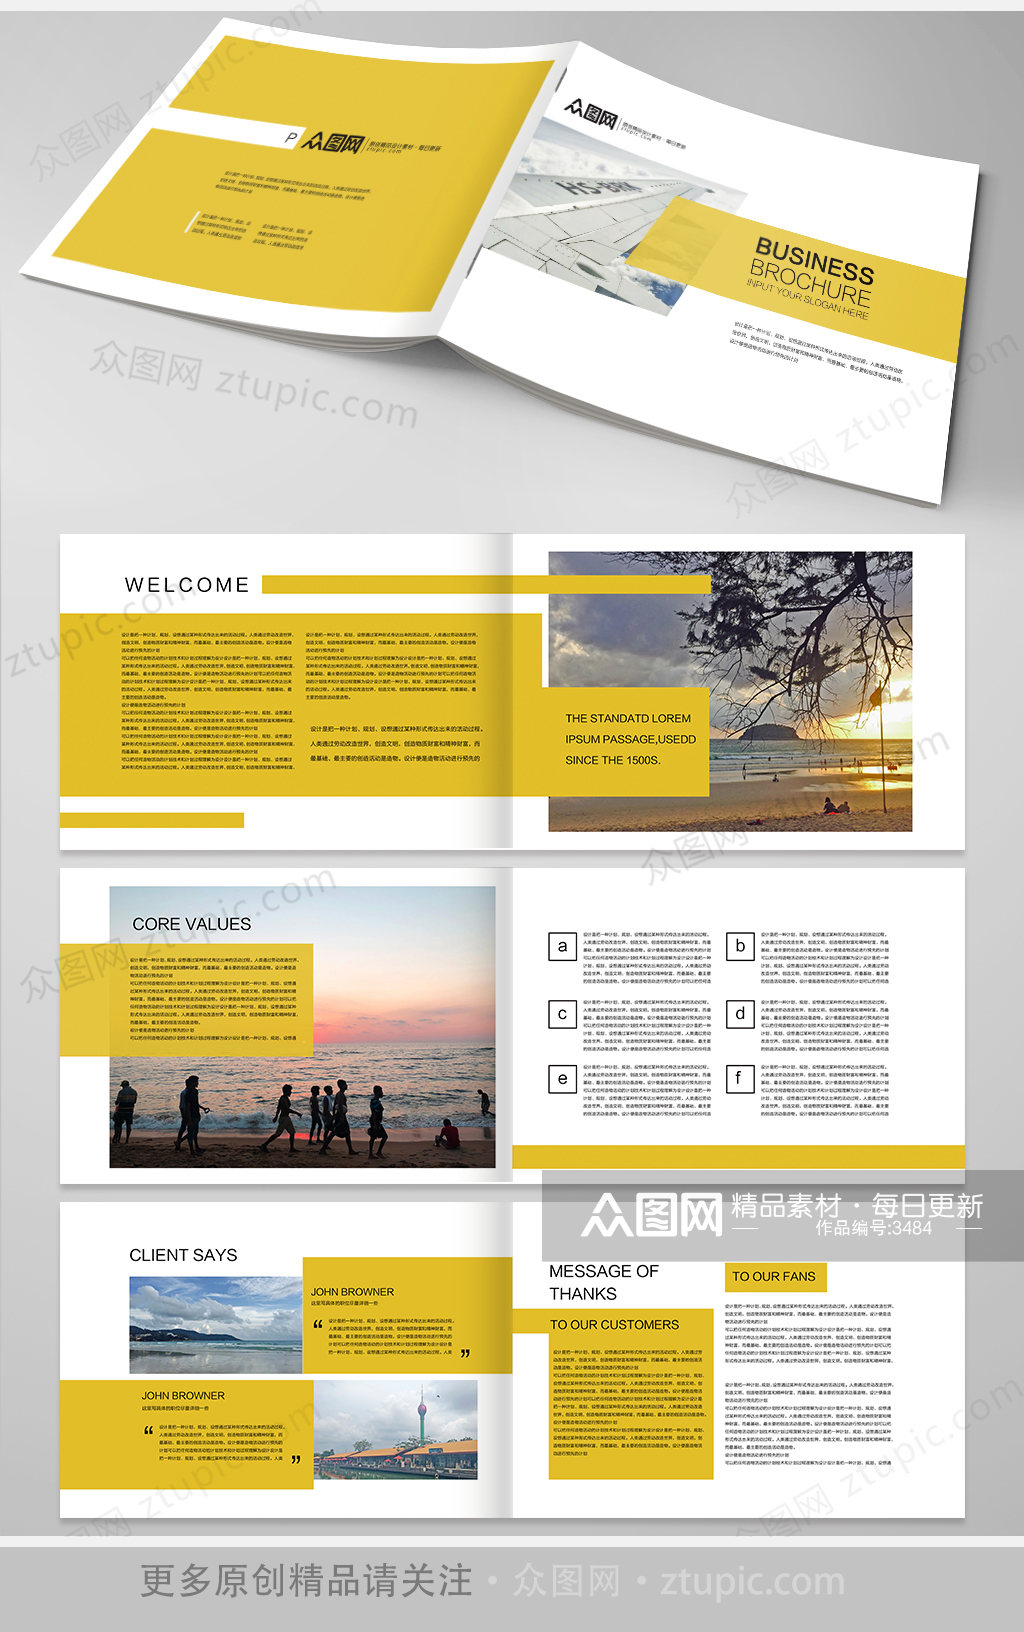 黄色时尚大气的企业画册设计素材